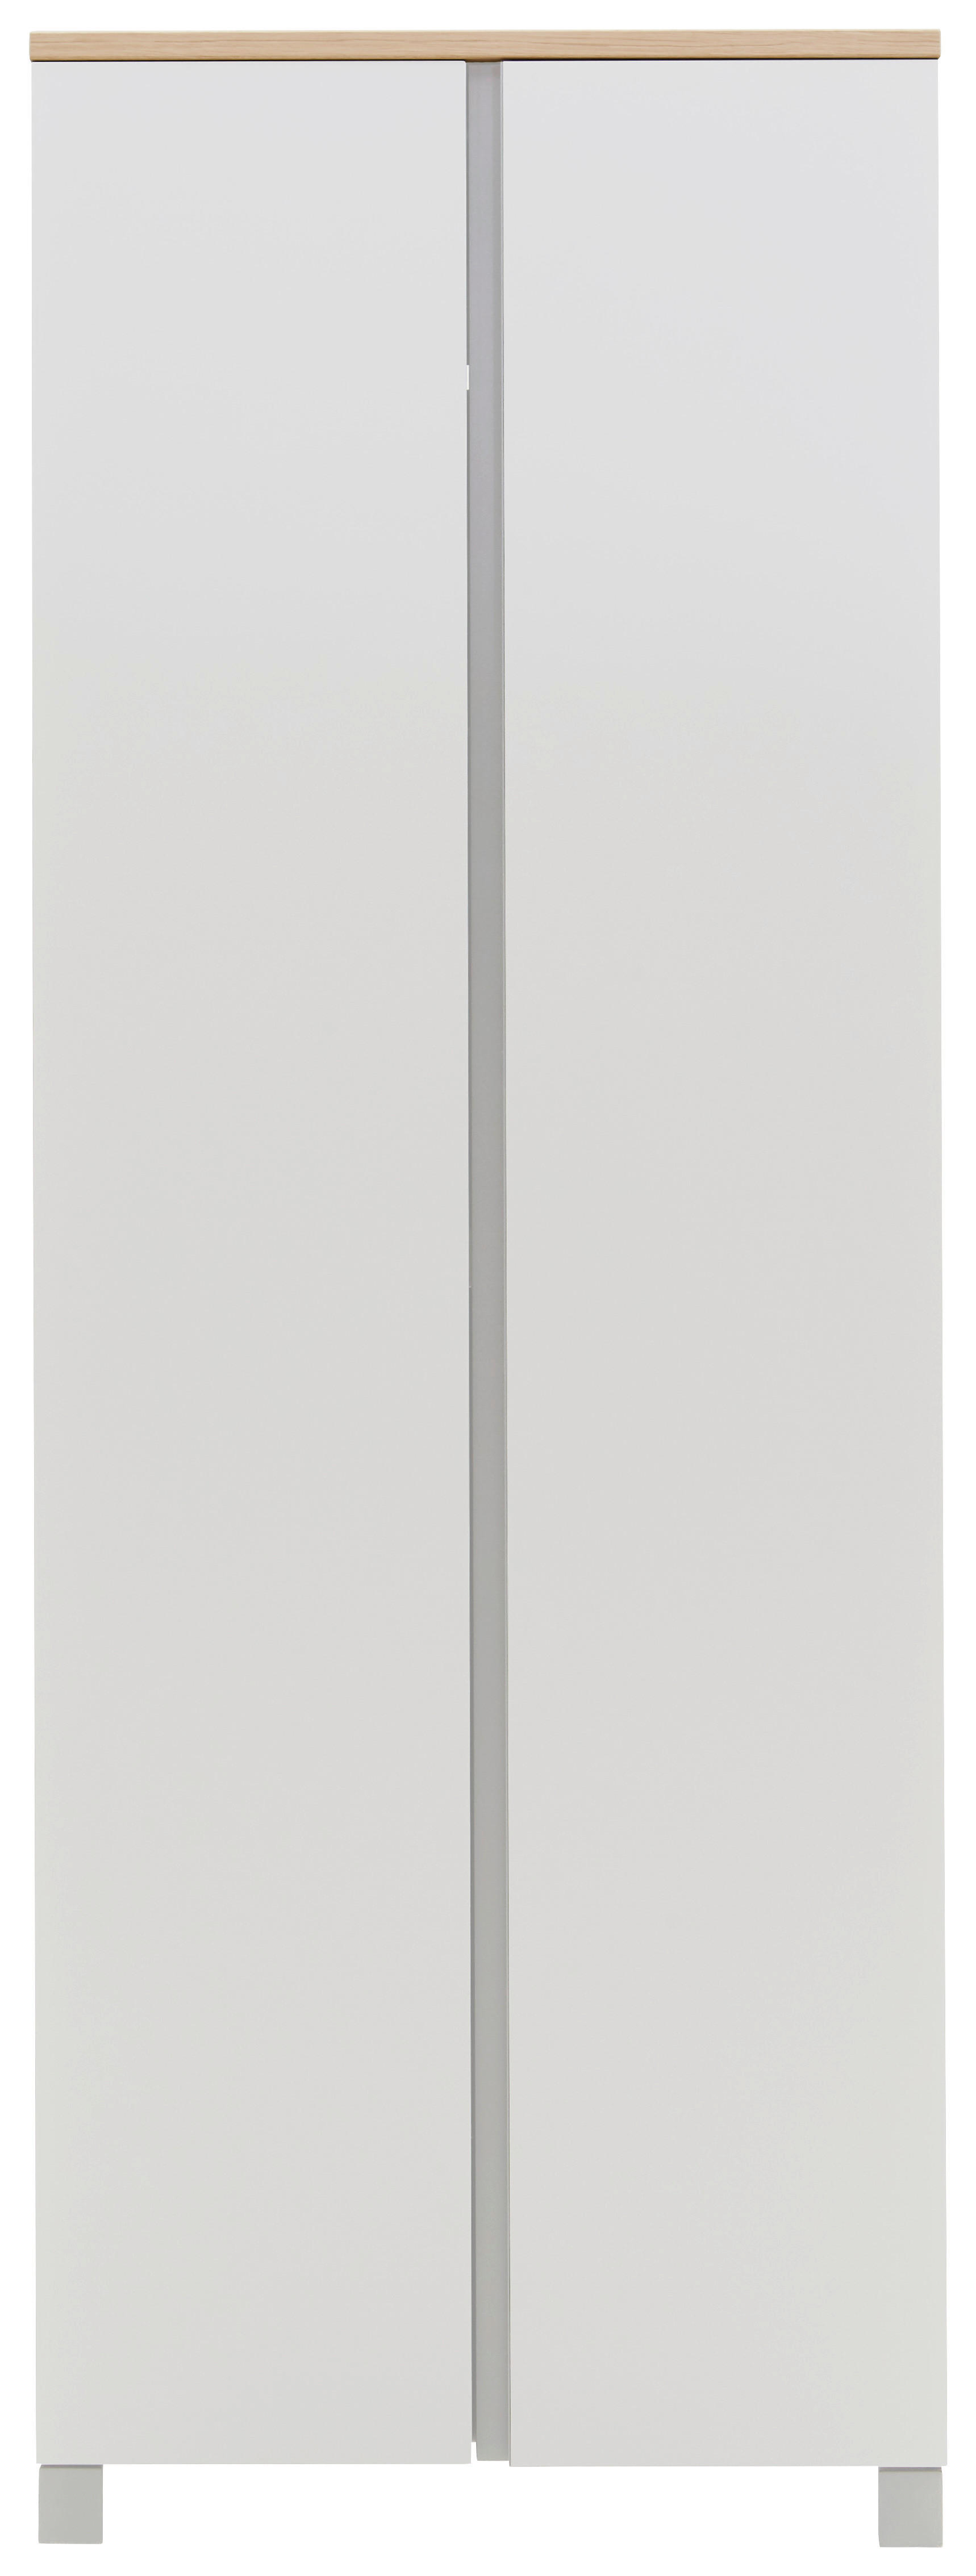 GARDEROBE Silberfarben, Weiß, Eichefarben  - Eichefarben/Silberfarben, Design, Holz/Metall (260/193/40cm) - Dieter Knoll